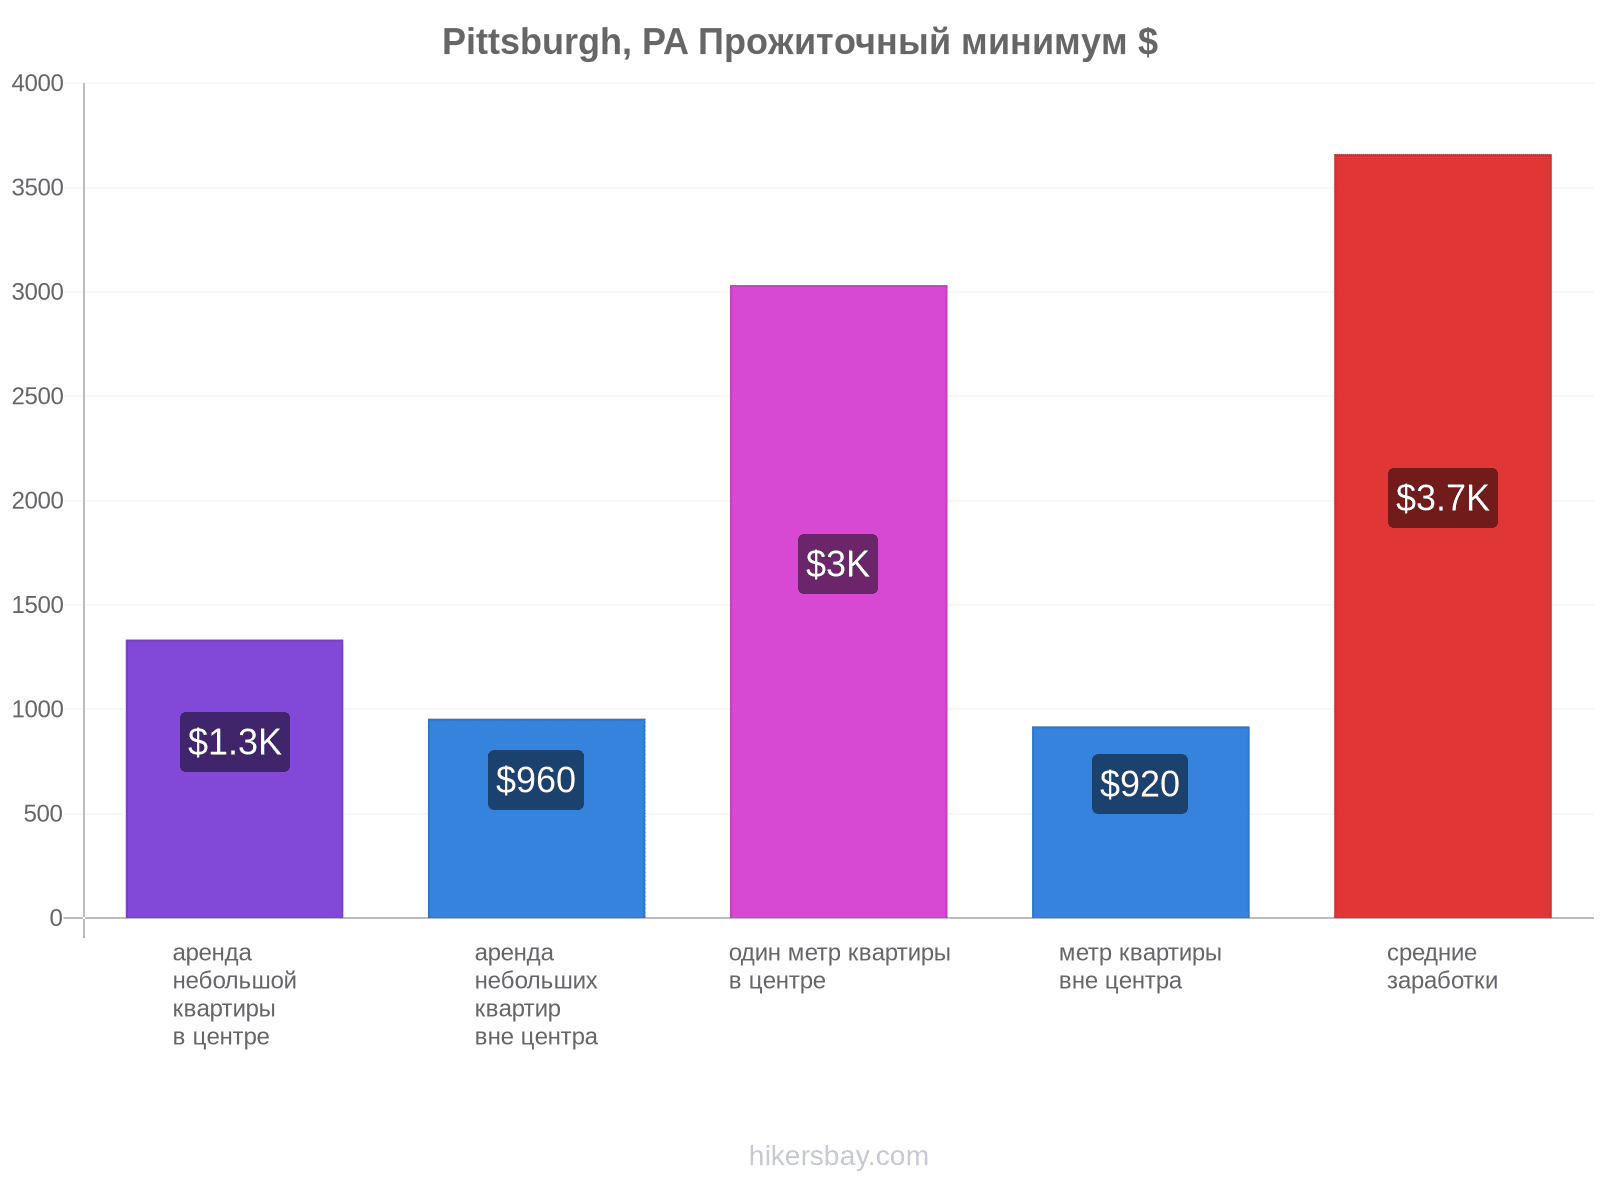 Pittsburgh, PA стоимость жизни hikersbay.com